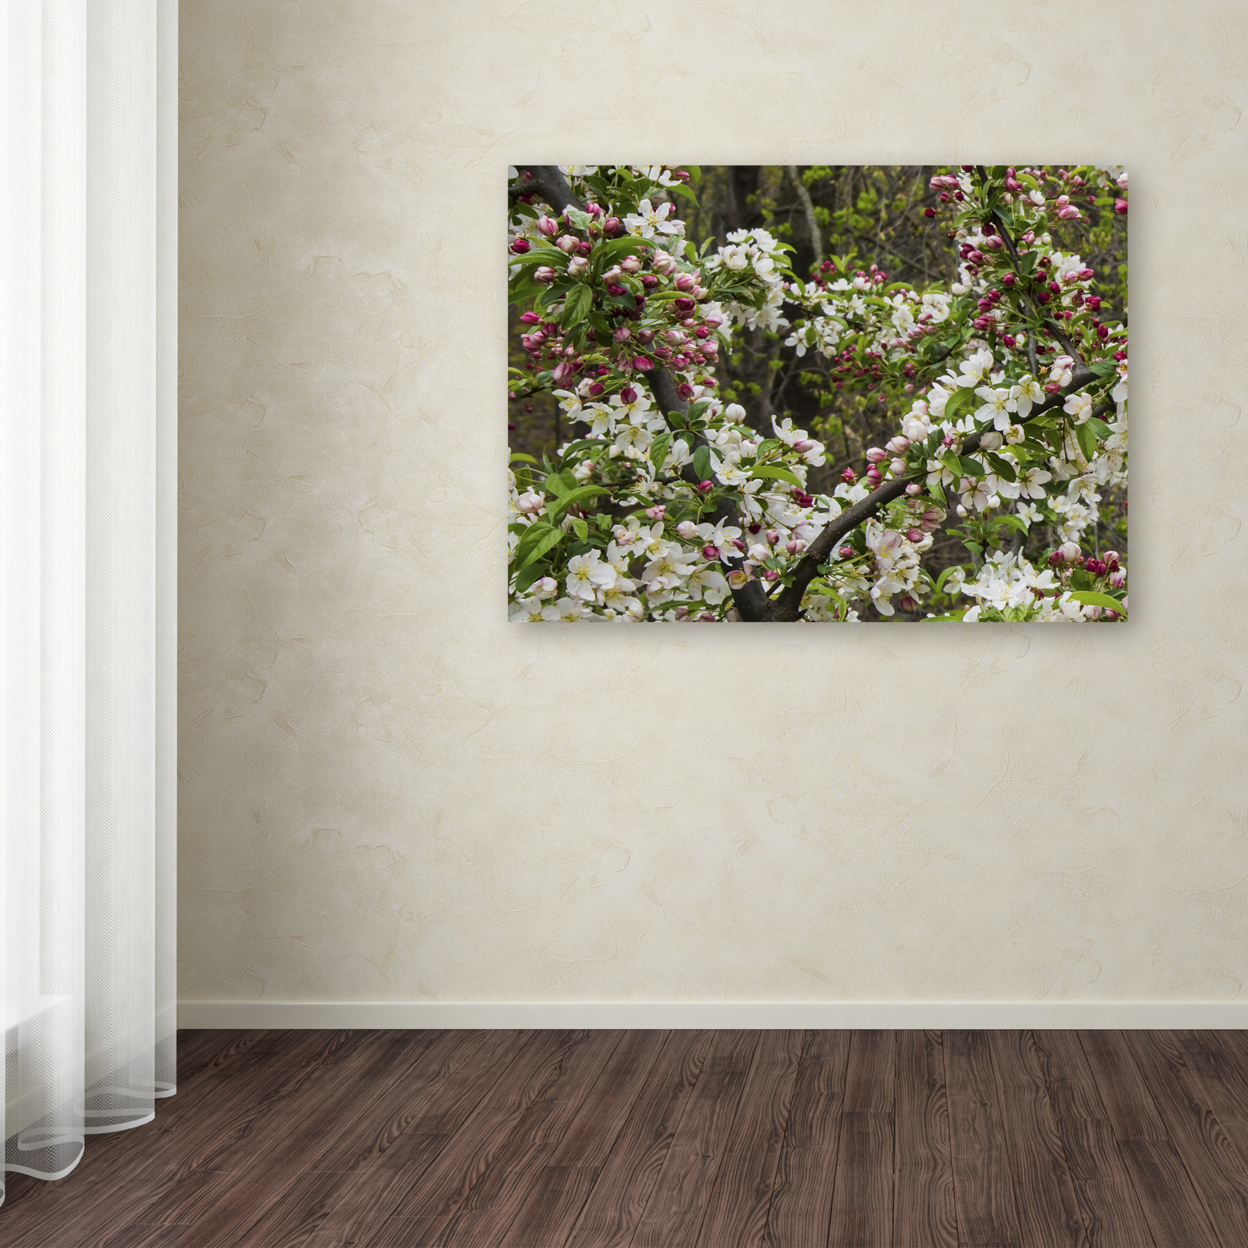 Kurt Shaffer 'Apple Blossoms II' Canvas Art 18 X 24